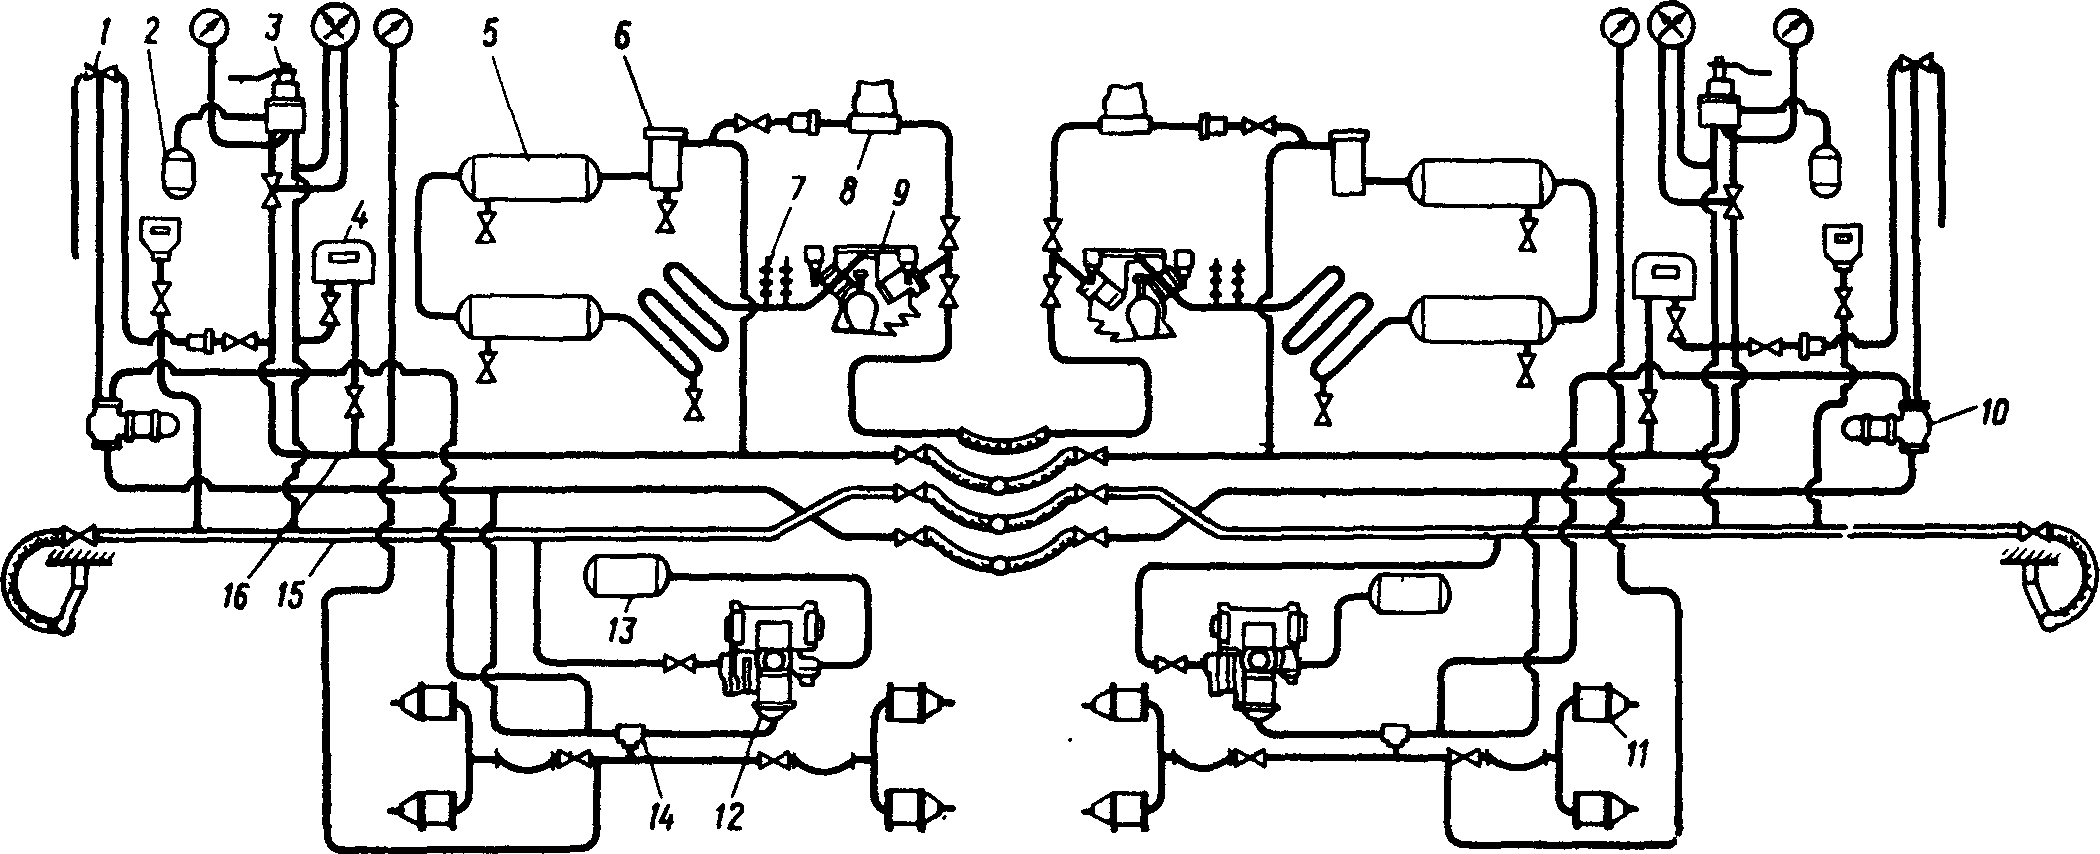 Схема тормозного оборудования тепловоза ТЭ2